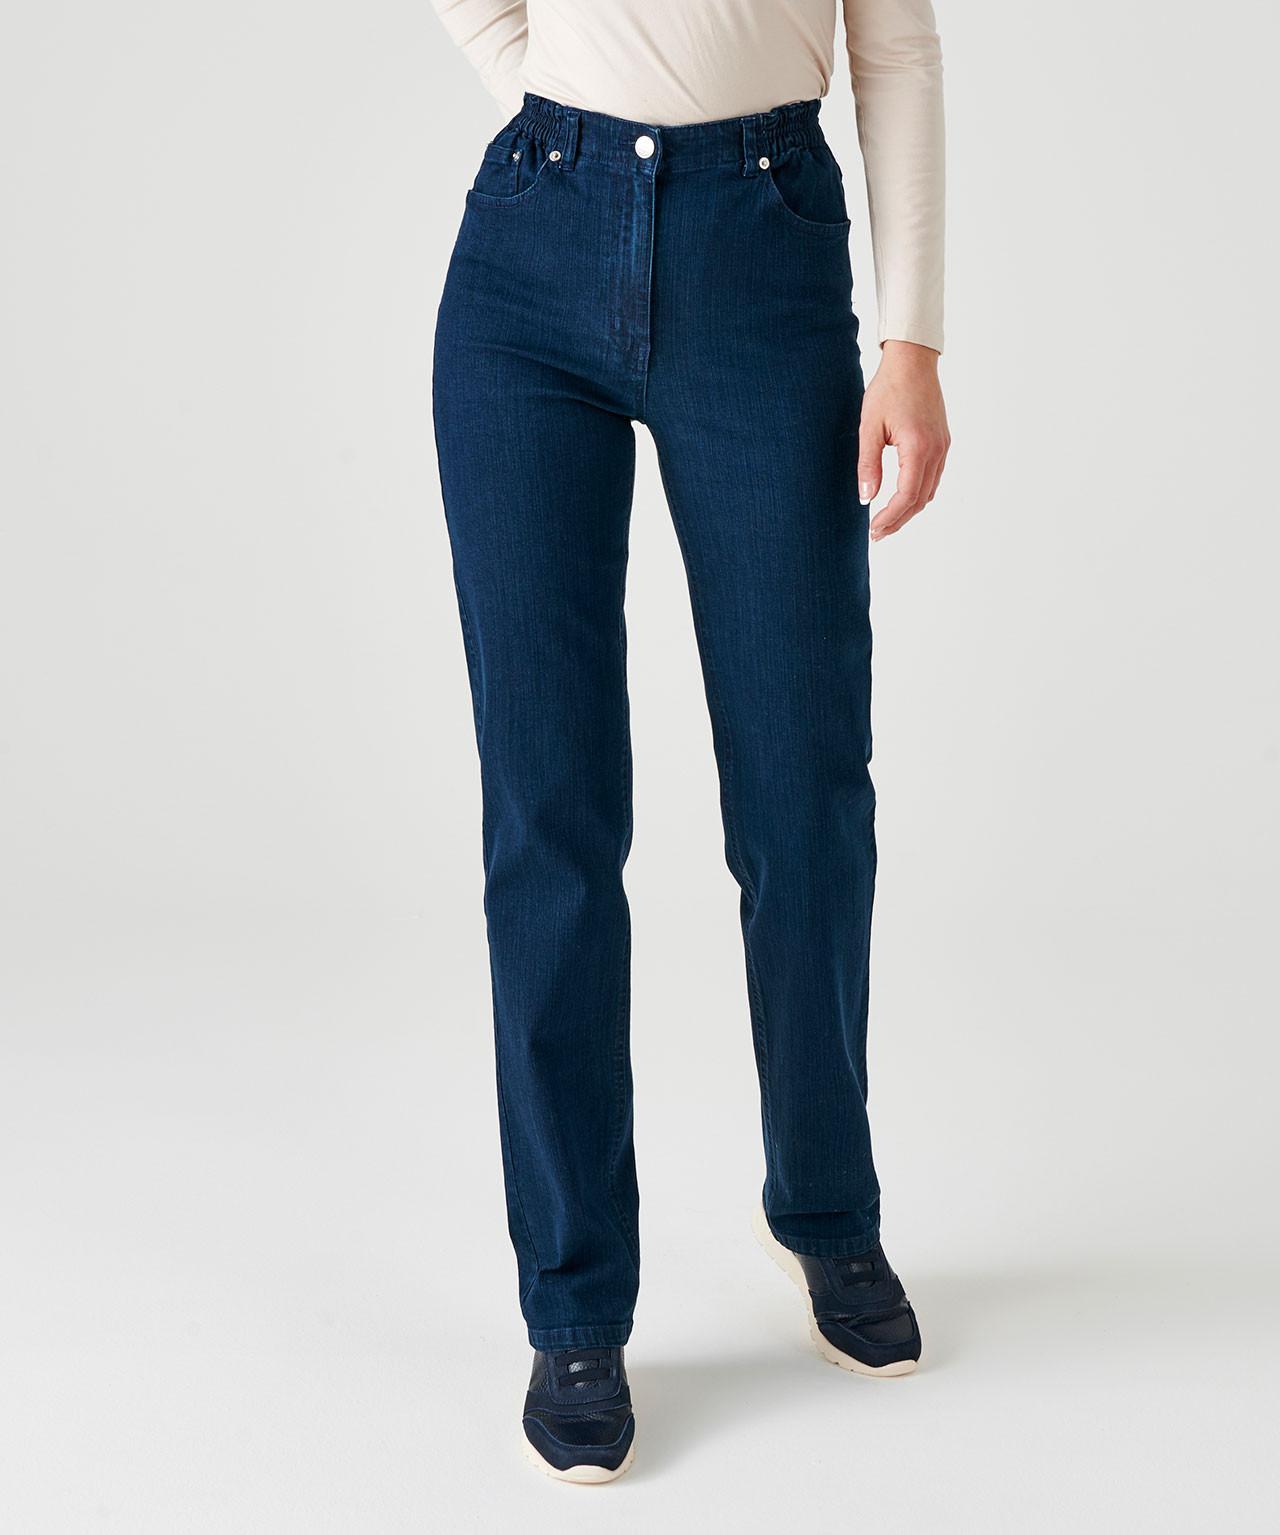 5-pocket-jeans In 2 Körpergrößen. Damen Blau 38 von Damart